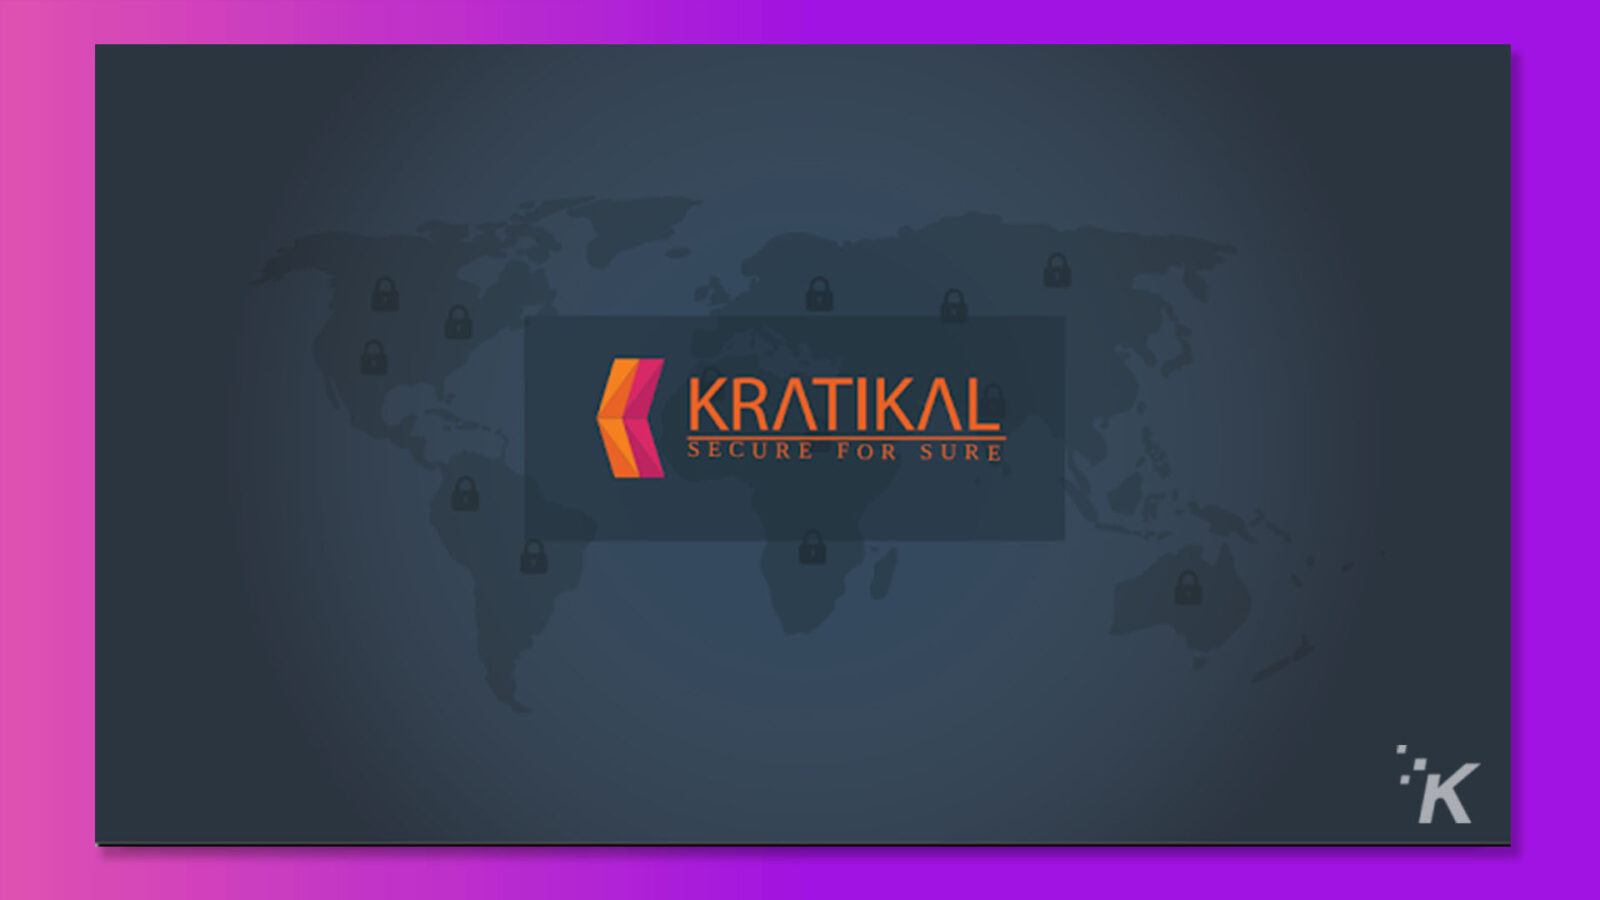 تُظهر الصورة شخصًا يستخدم Kratikal Secure لحماية بياناته. النص الكامل: KRATIKAL SECURE FOR SURE